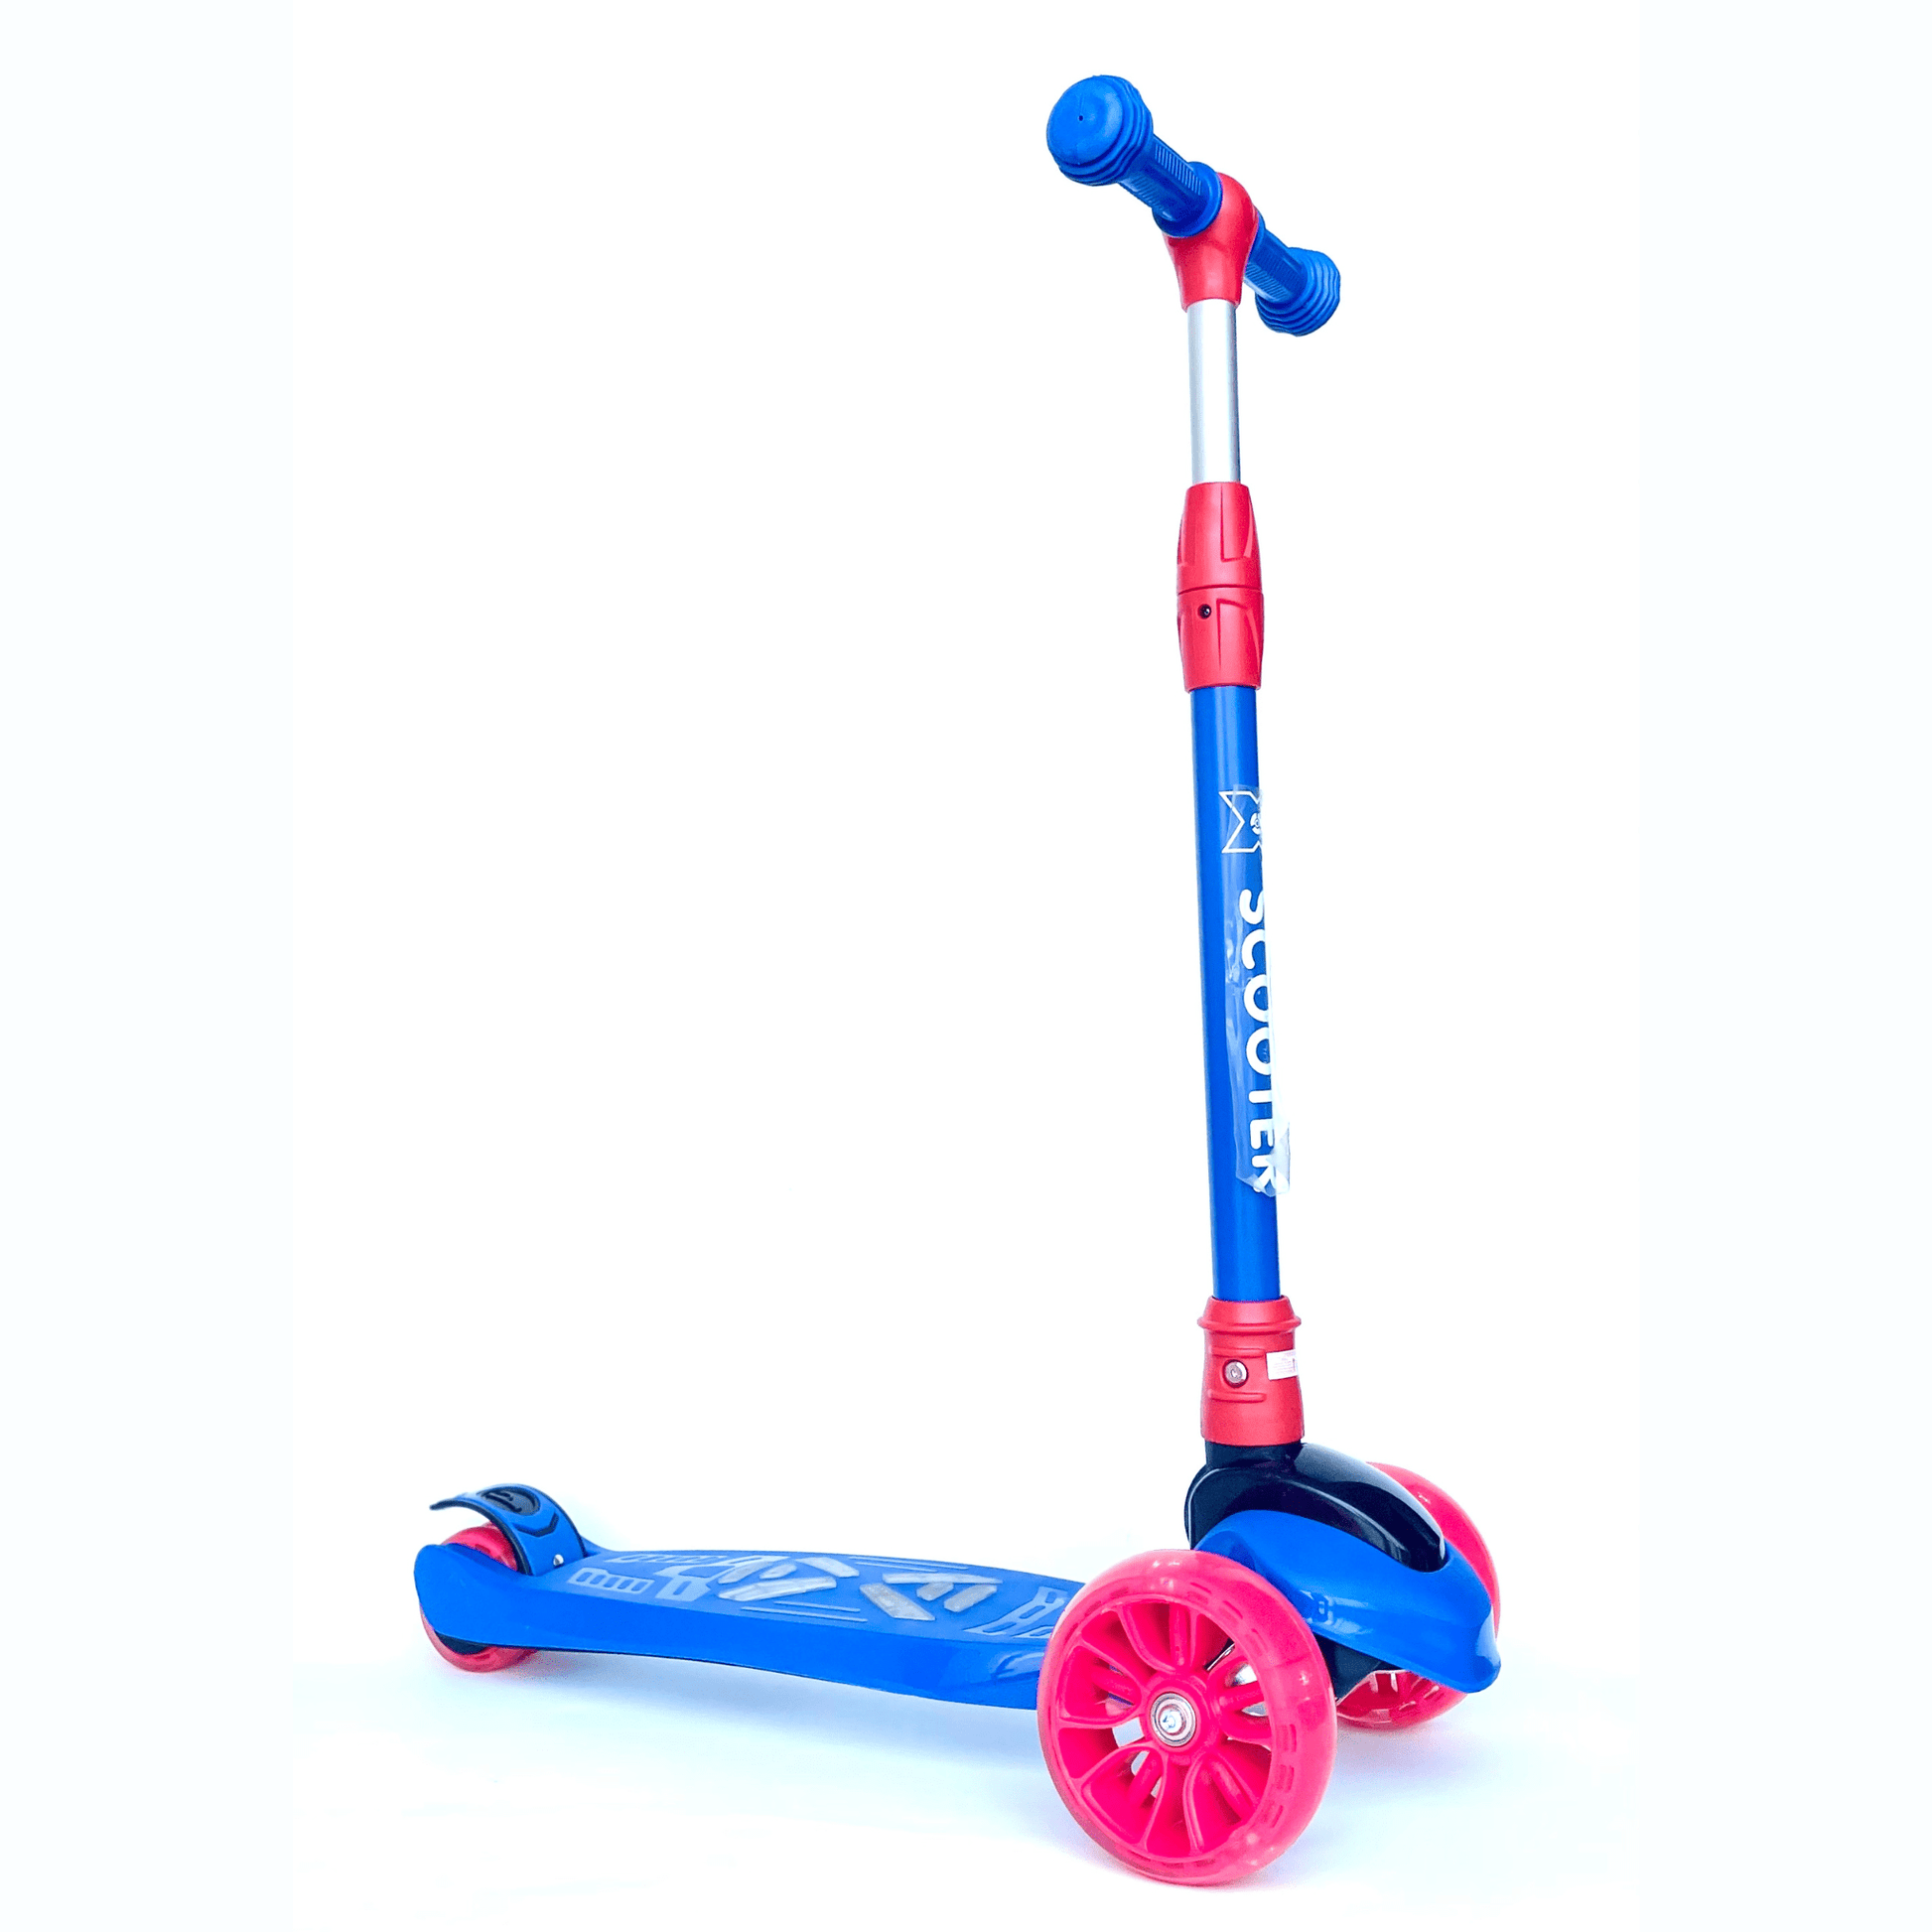 Scooter azul y rojo de tres ruedas para niños, marca 'Velocity', con marco de aluminio resistente, manillar ajustable y ruedas LED.